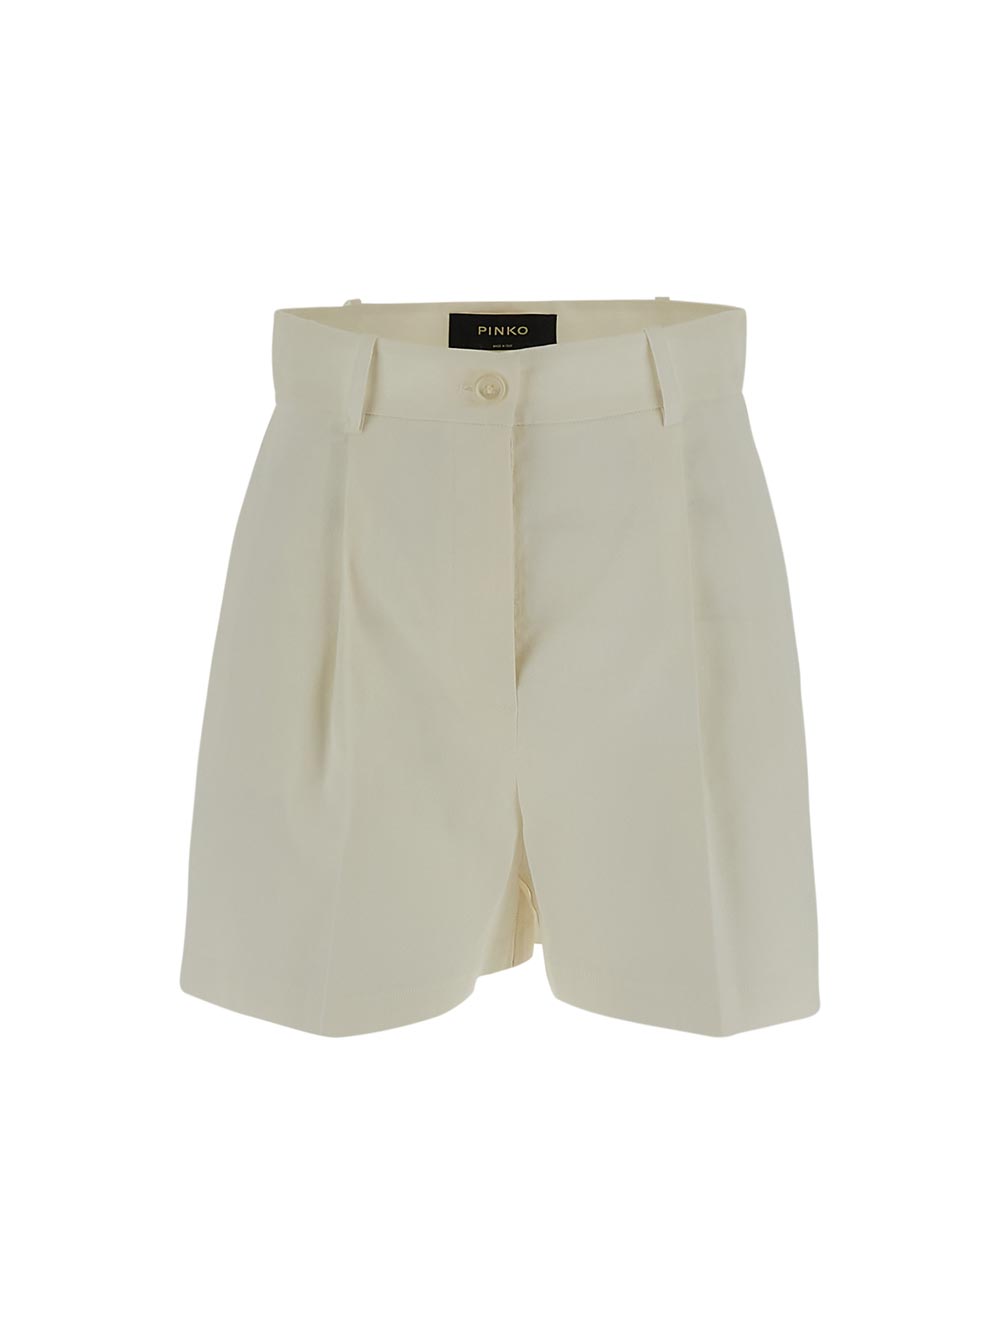 Pinko Tailored Linen Shorts